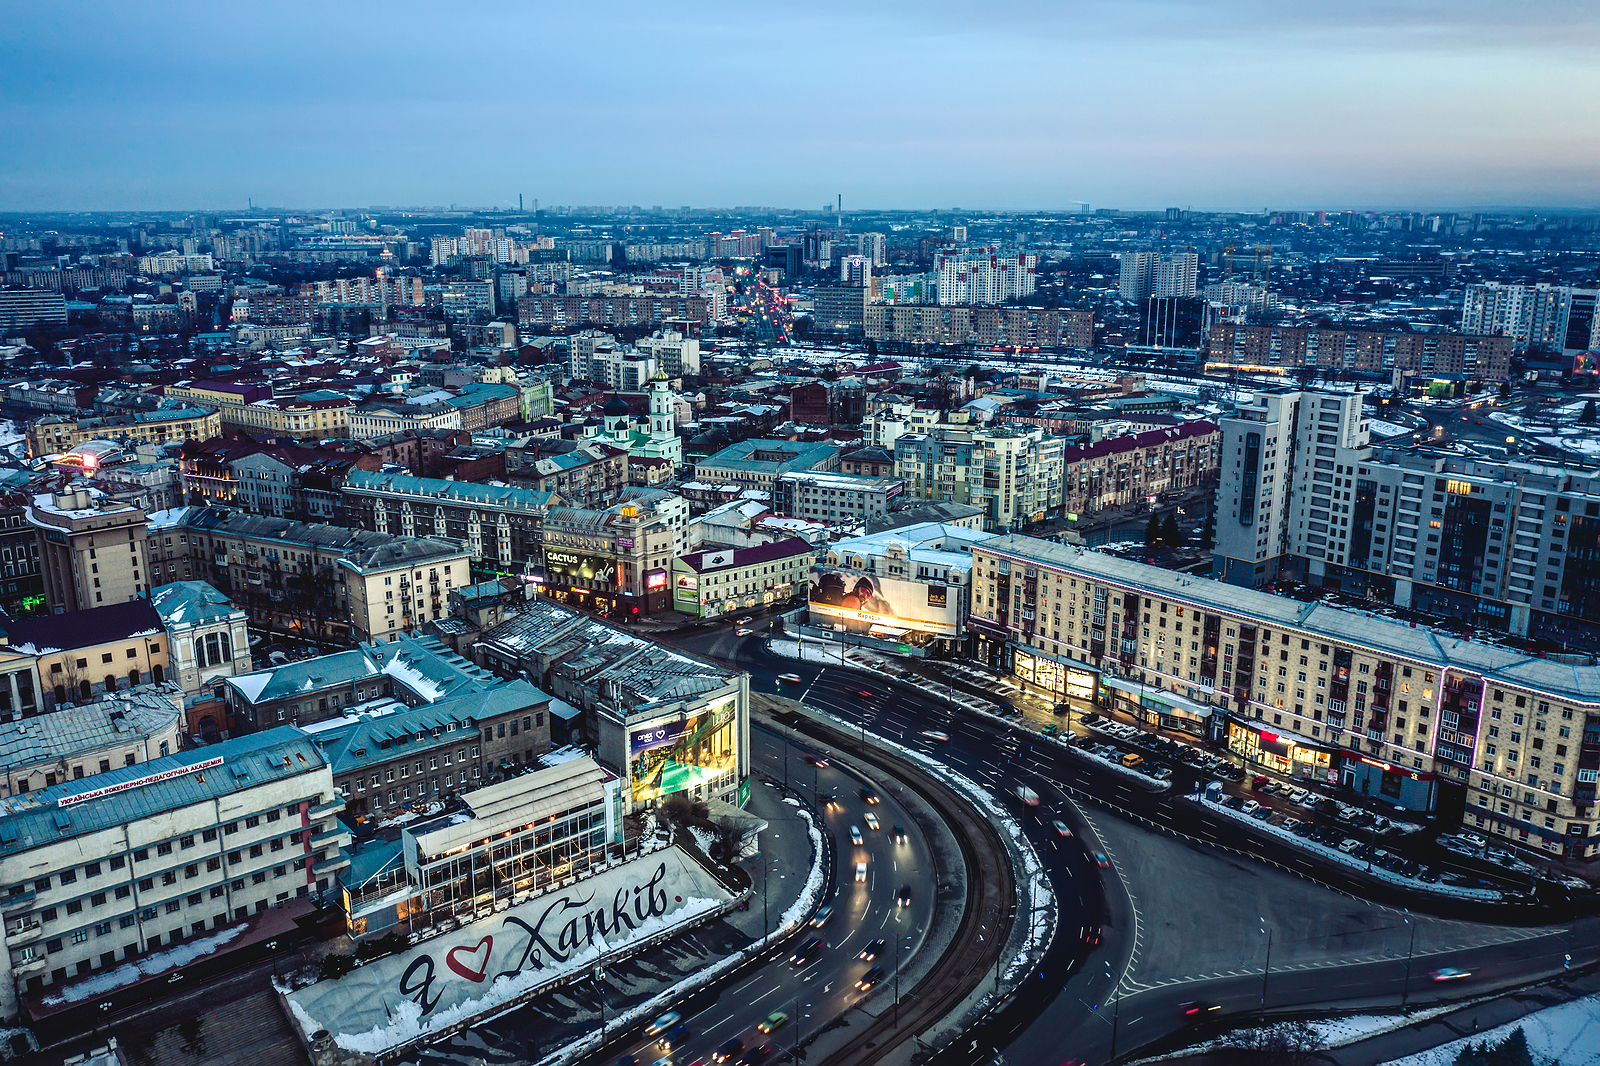 Читать актуальные новости Харькова и области - это важно и необходимо